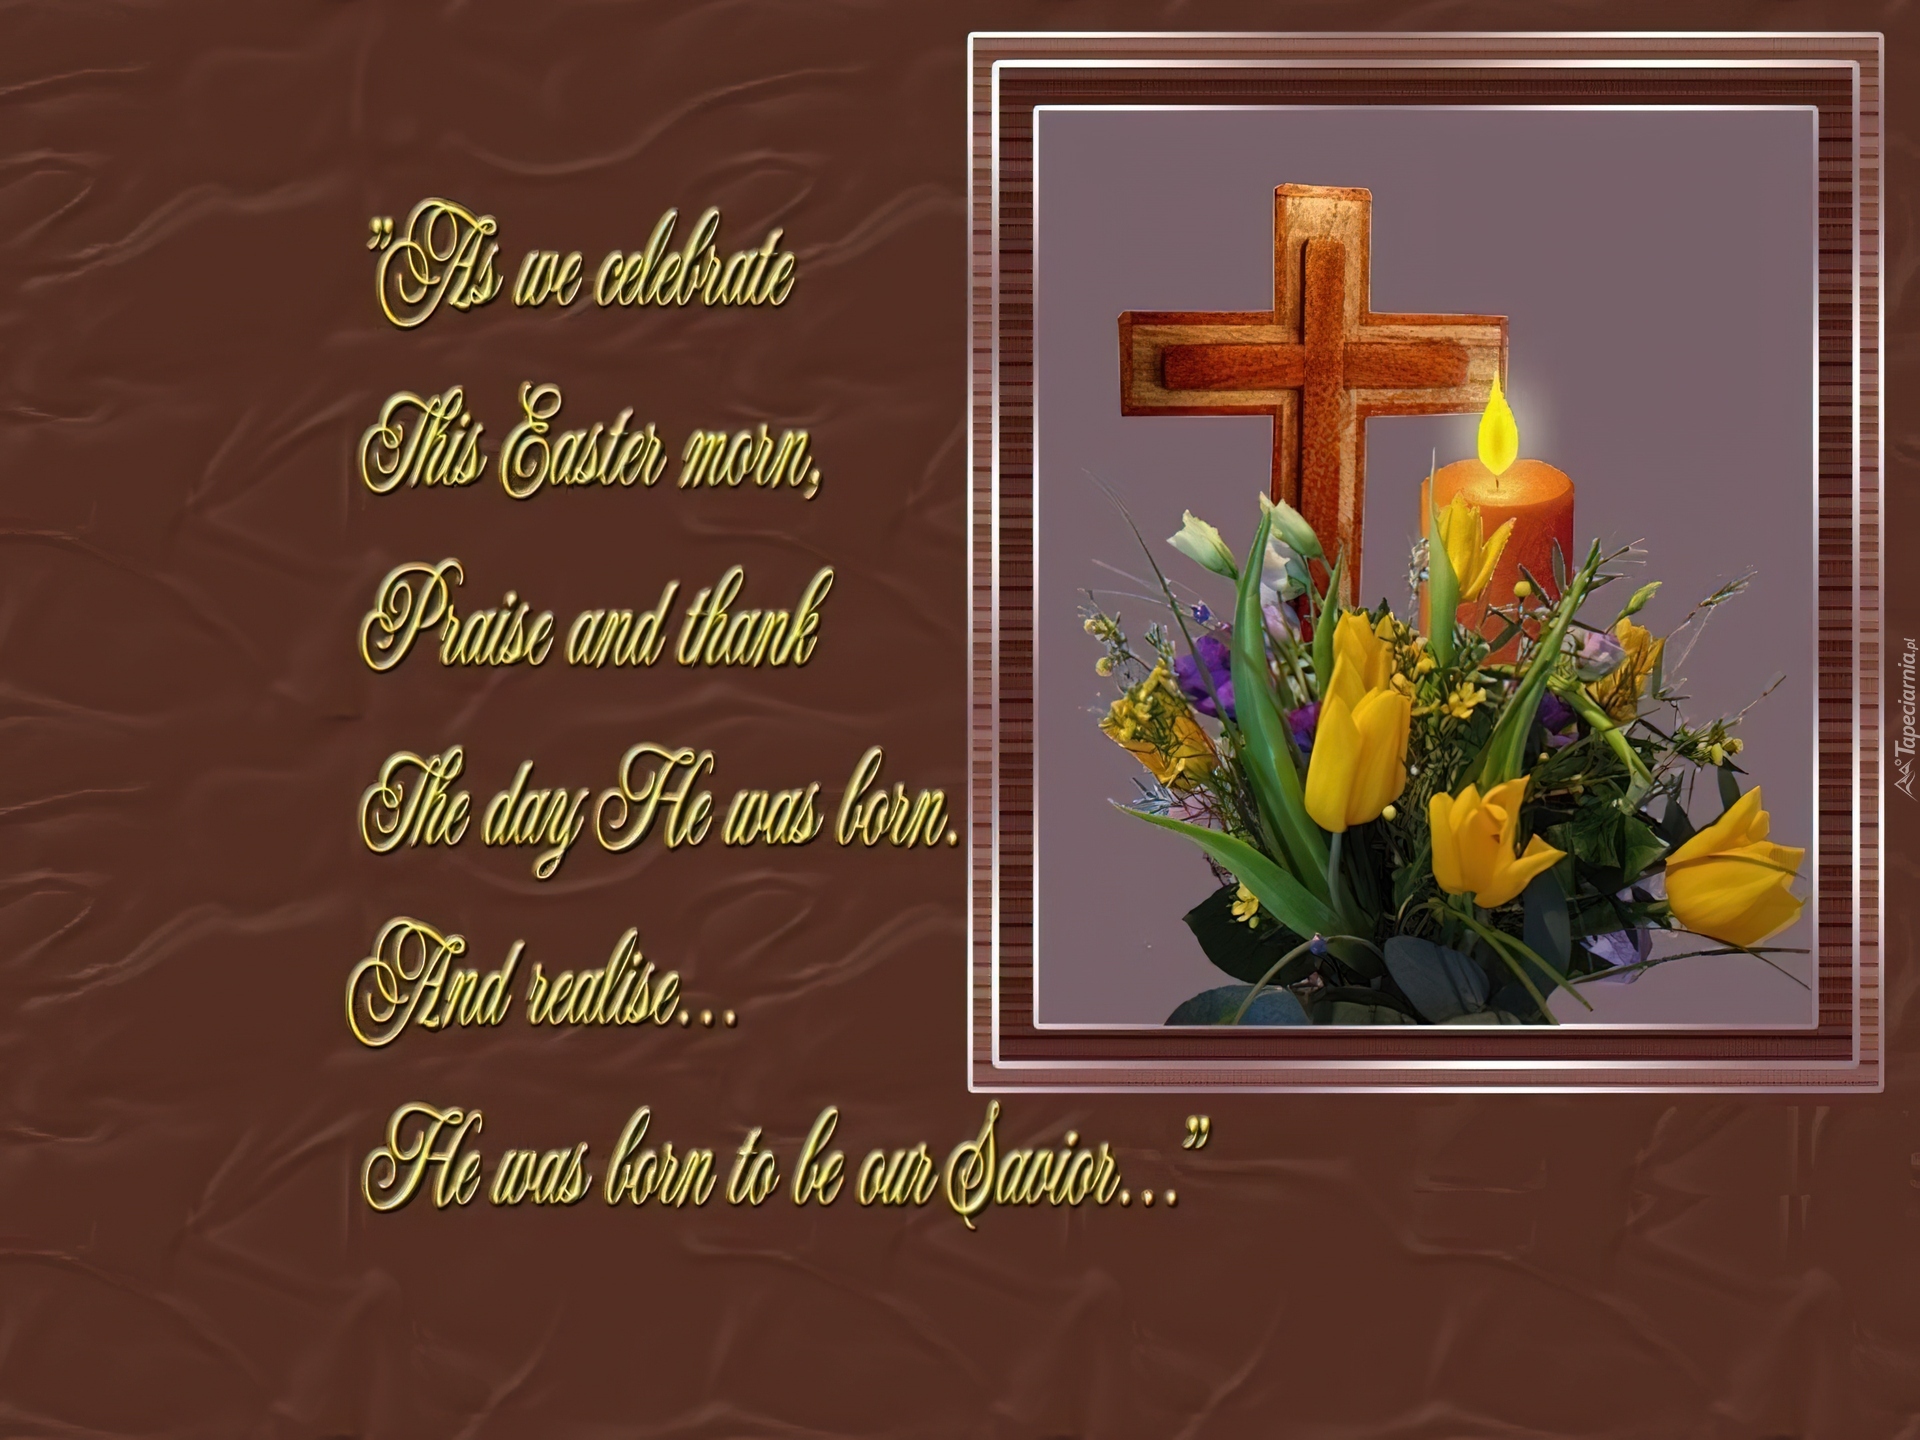 Wielkanoc, krzyż,obrazek Świeca